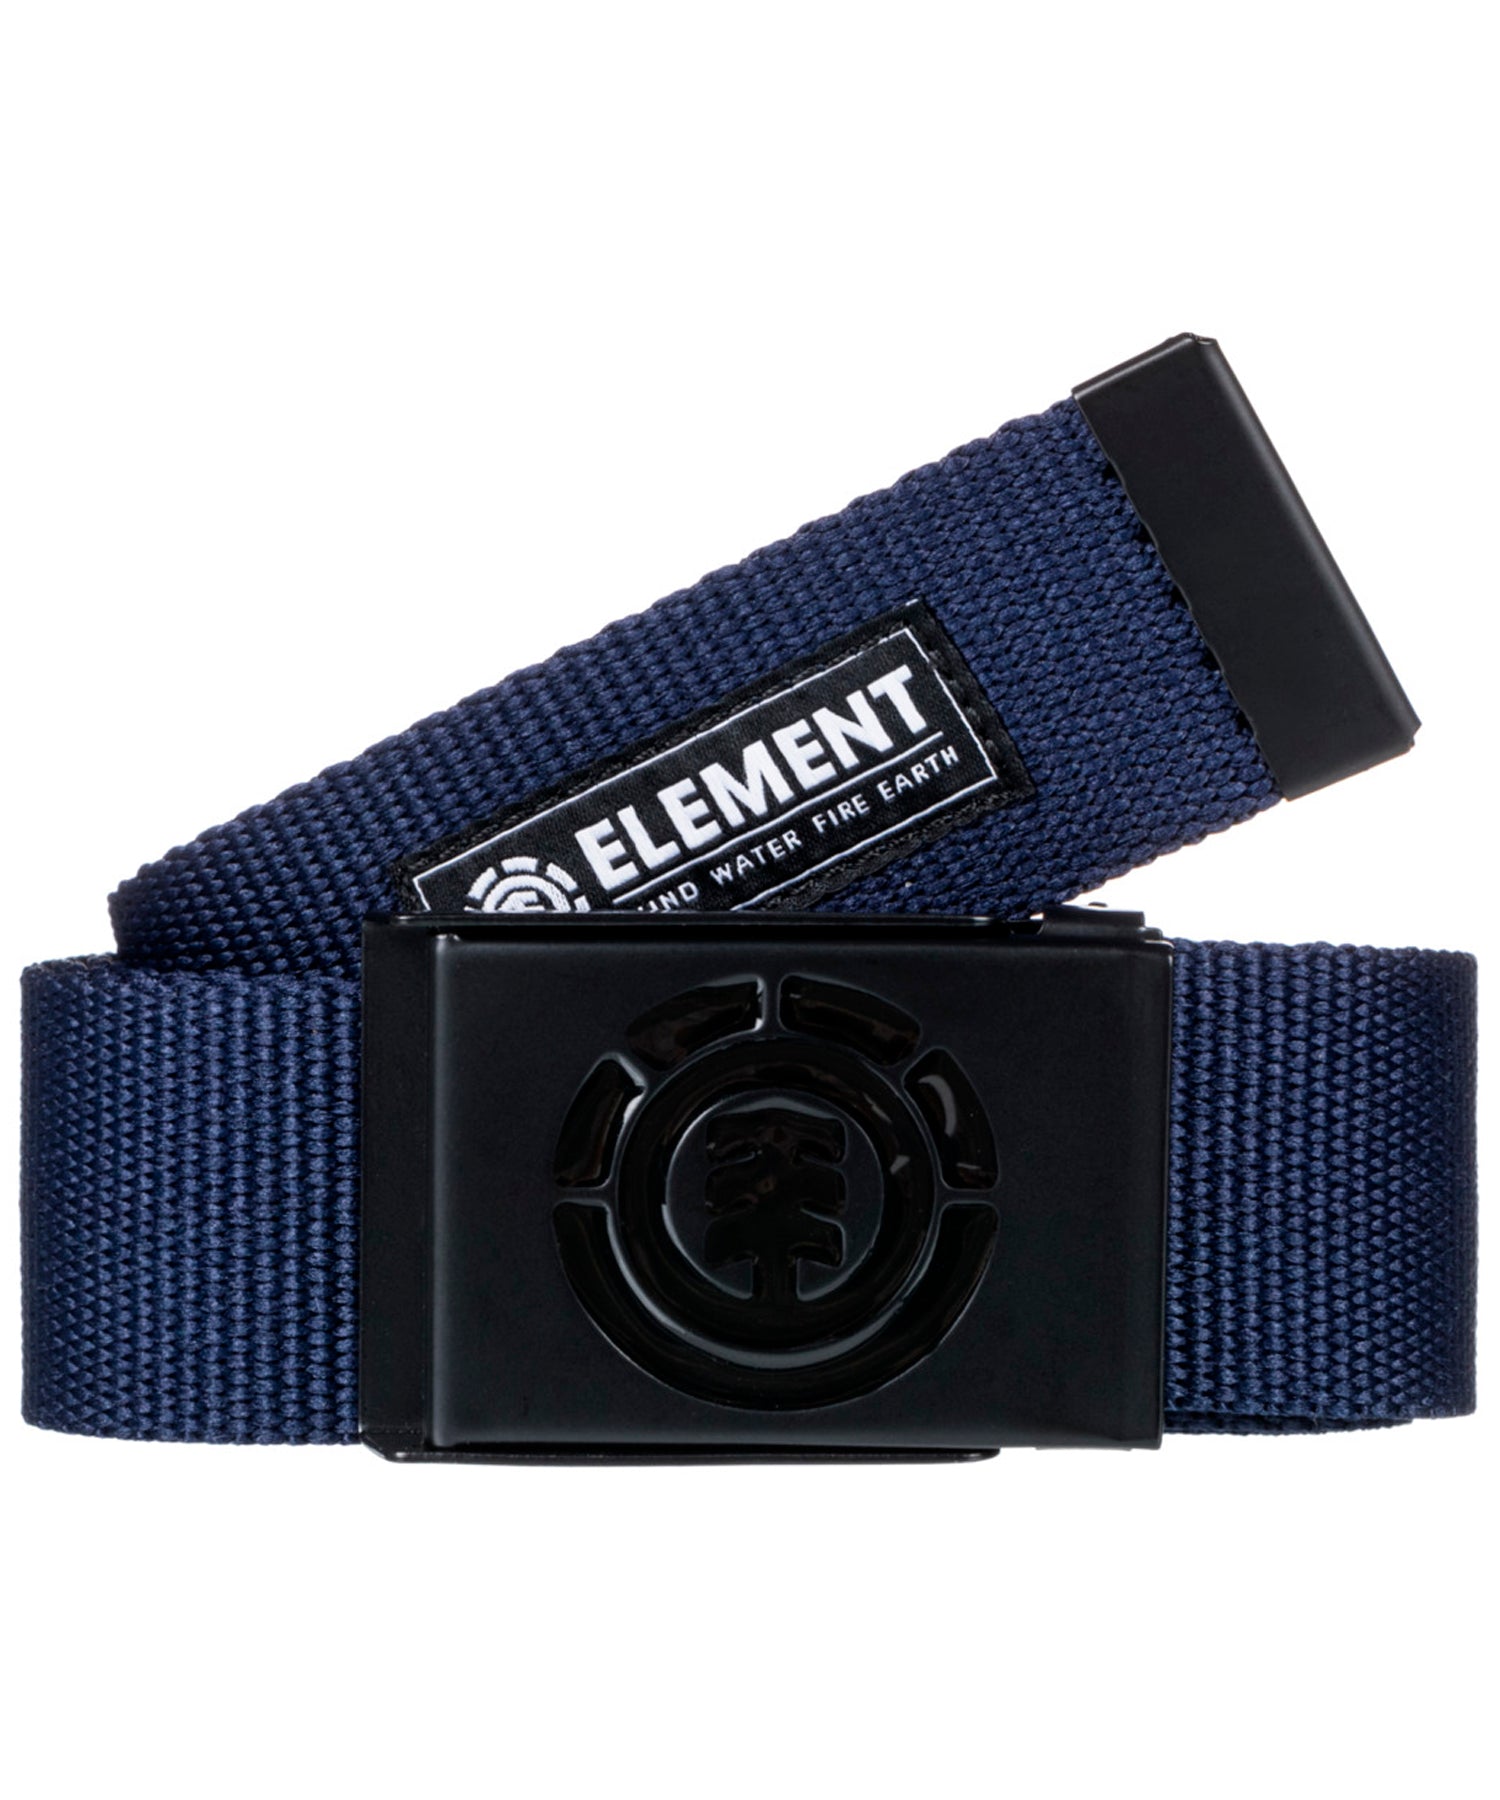 element-cinturon-beyond-color-azul-poliester-y-hebilla-metalica-con-logo-Element-talla-única-hasta-110cm.